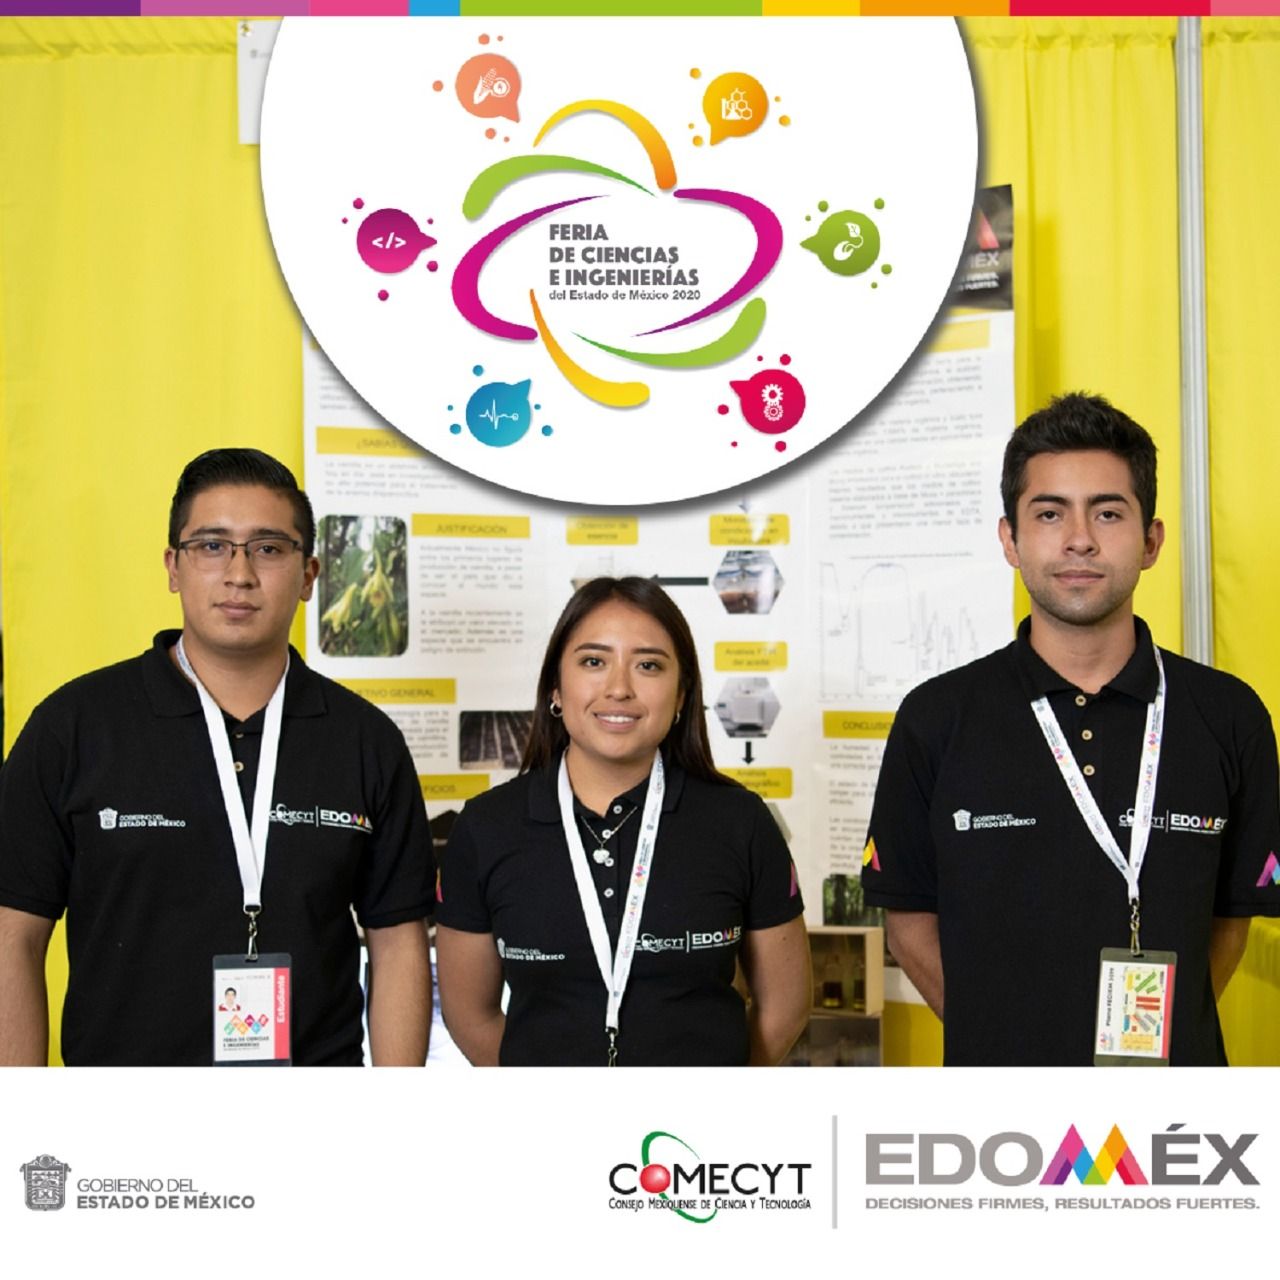 Convoca COMECYT a participar en feria de Ciencias e Ingenierías del Estado de México 2020